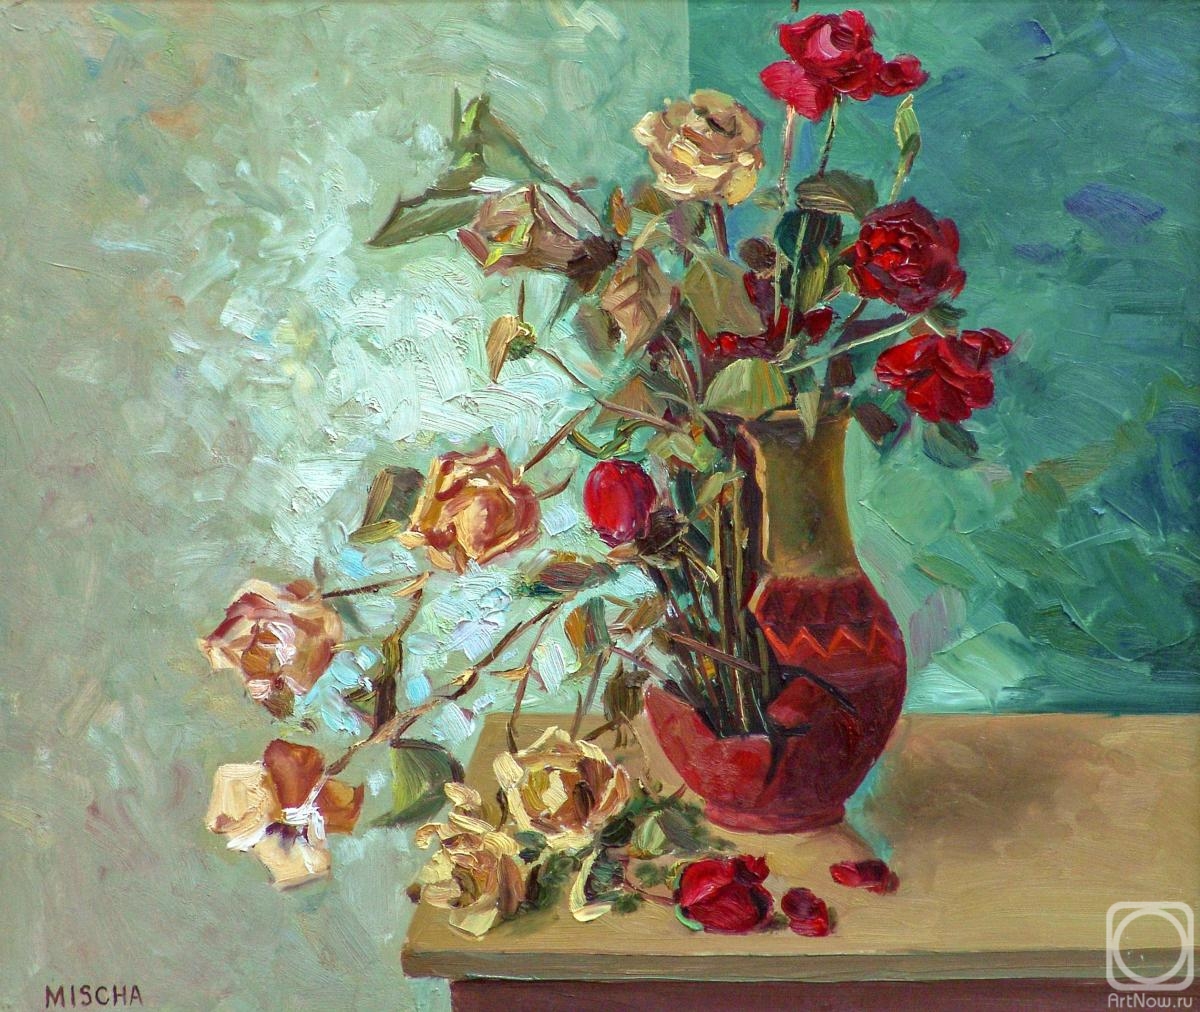 Grigoryan Mike. Roses